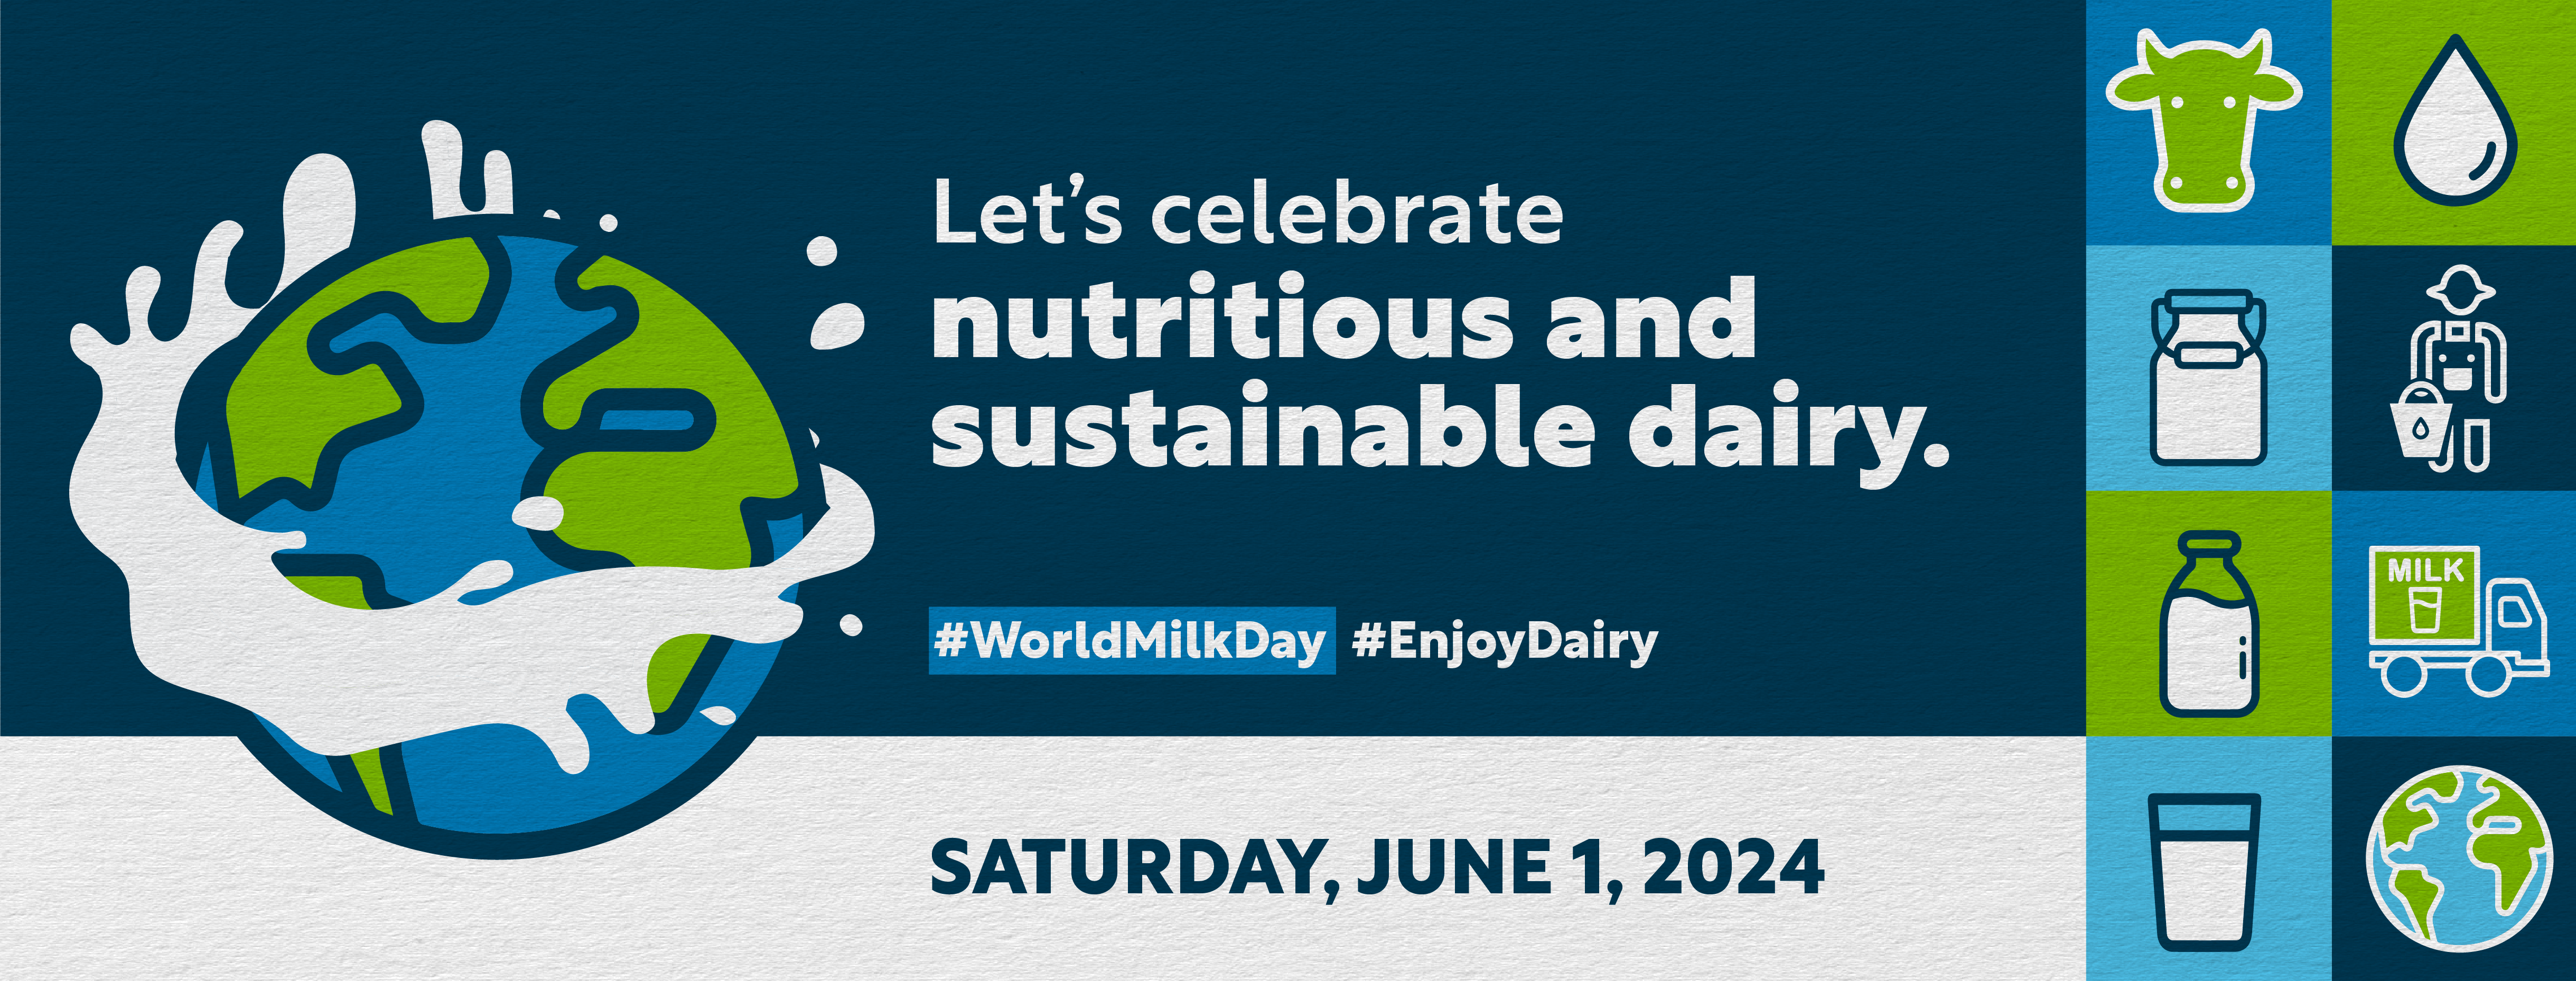 World Milk Day 2024